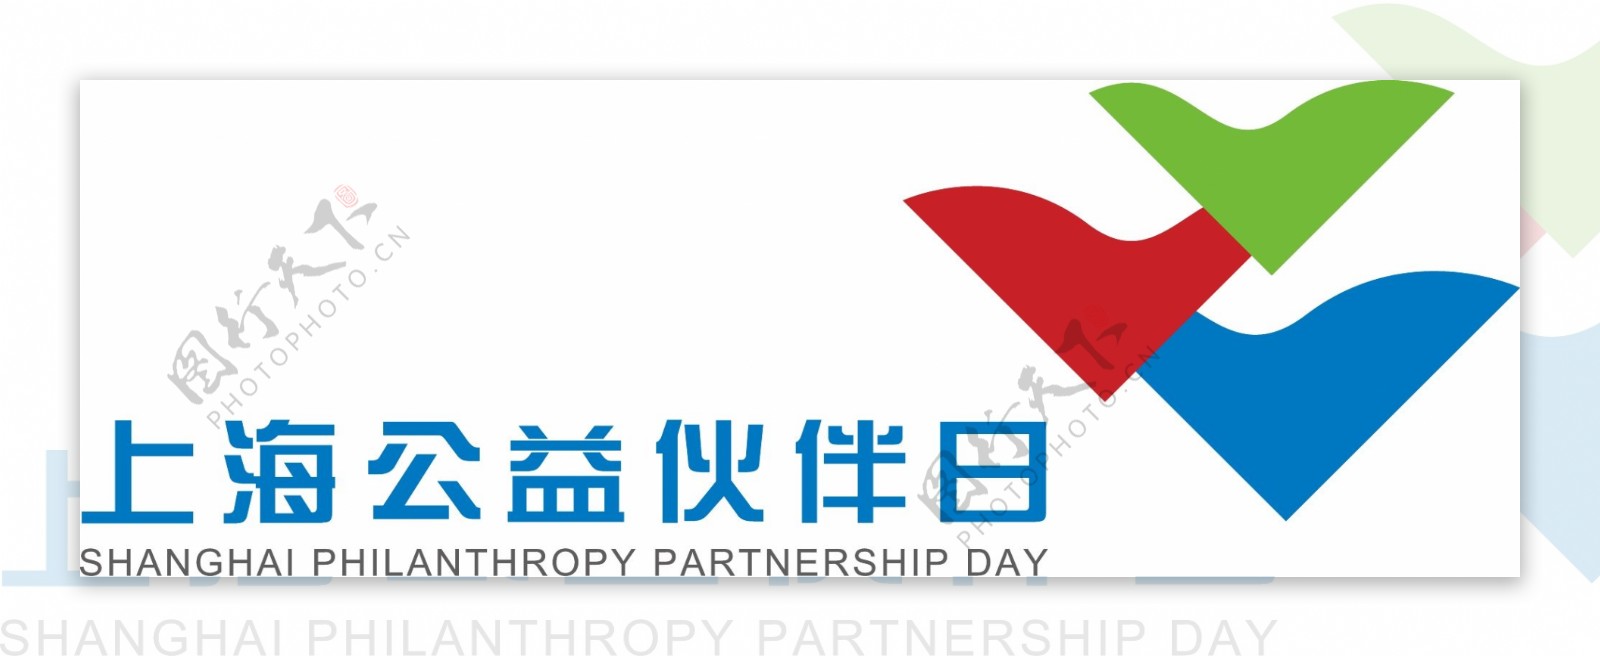 上海公益伙伴日logo图片